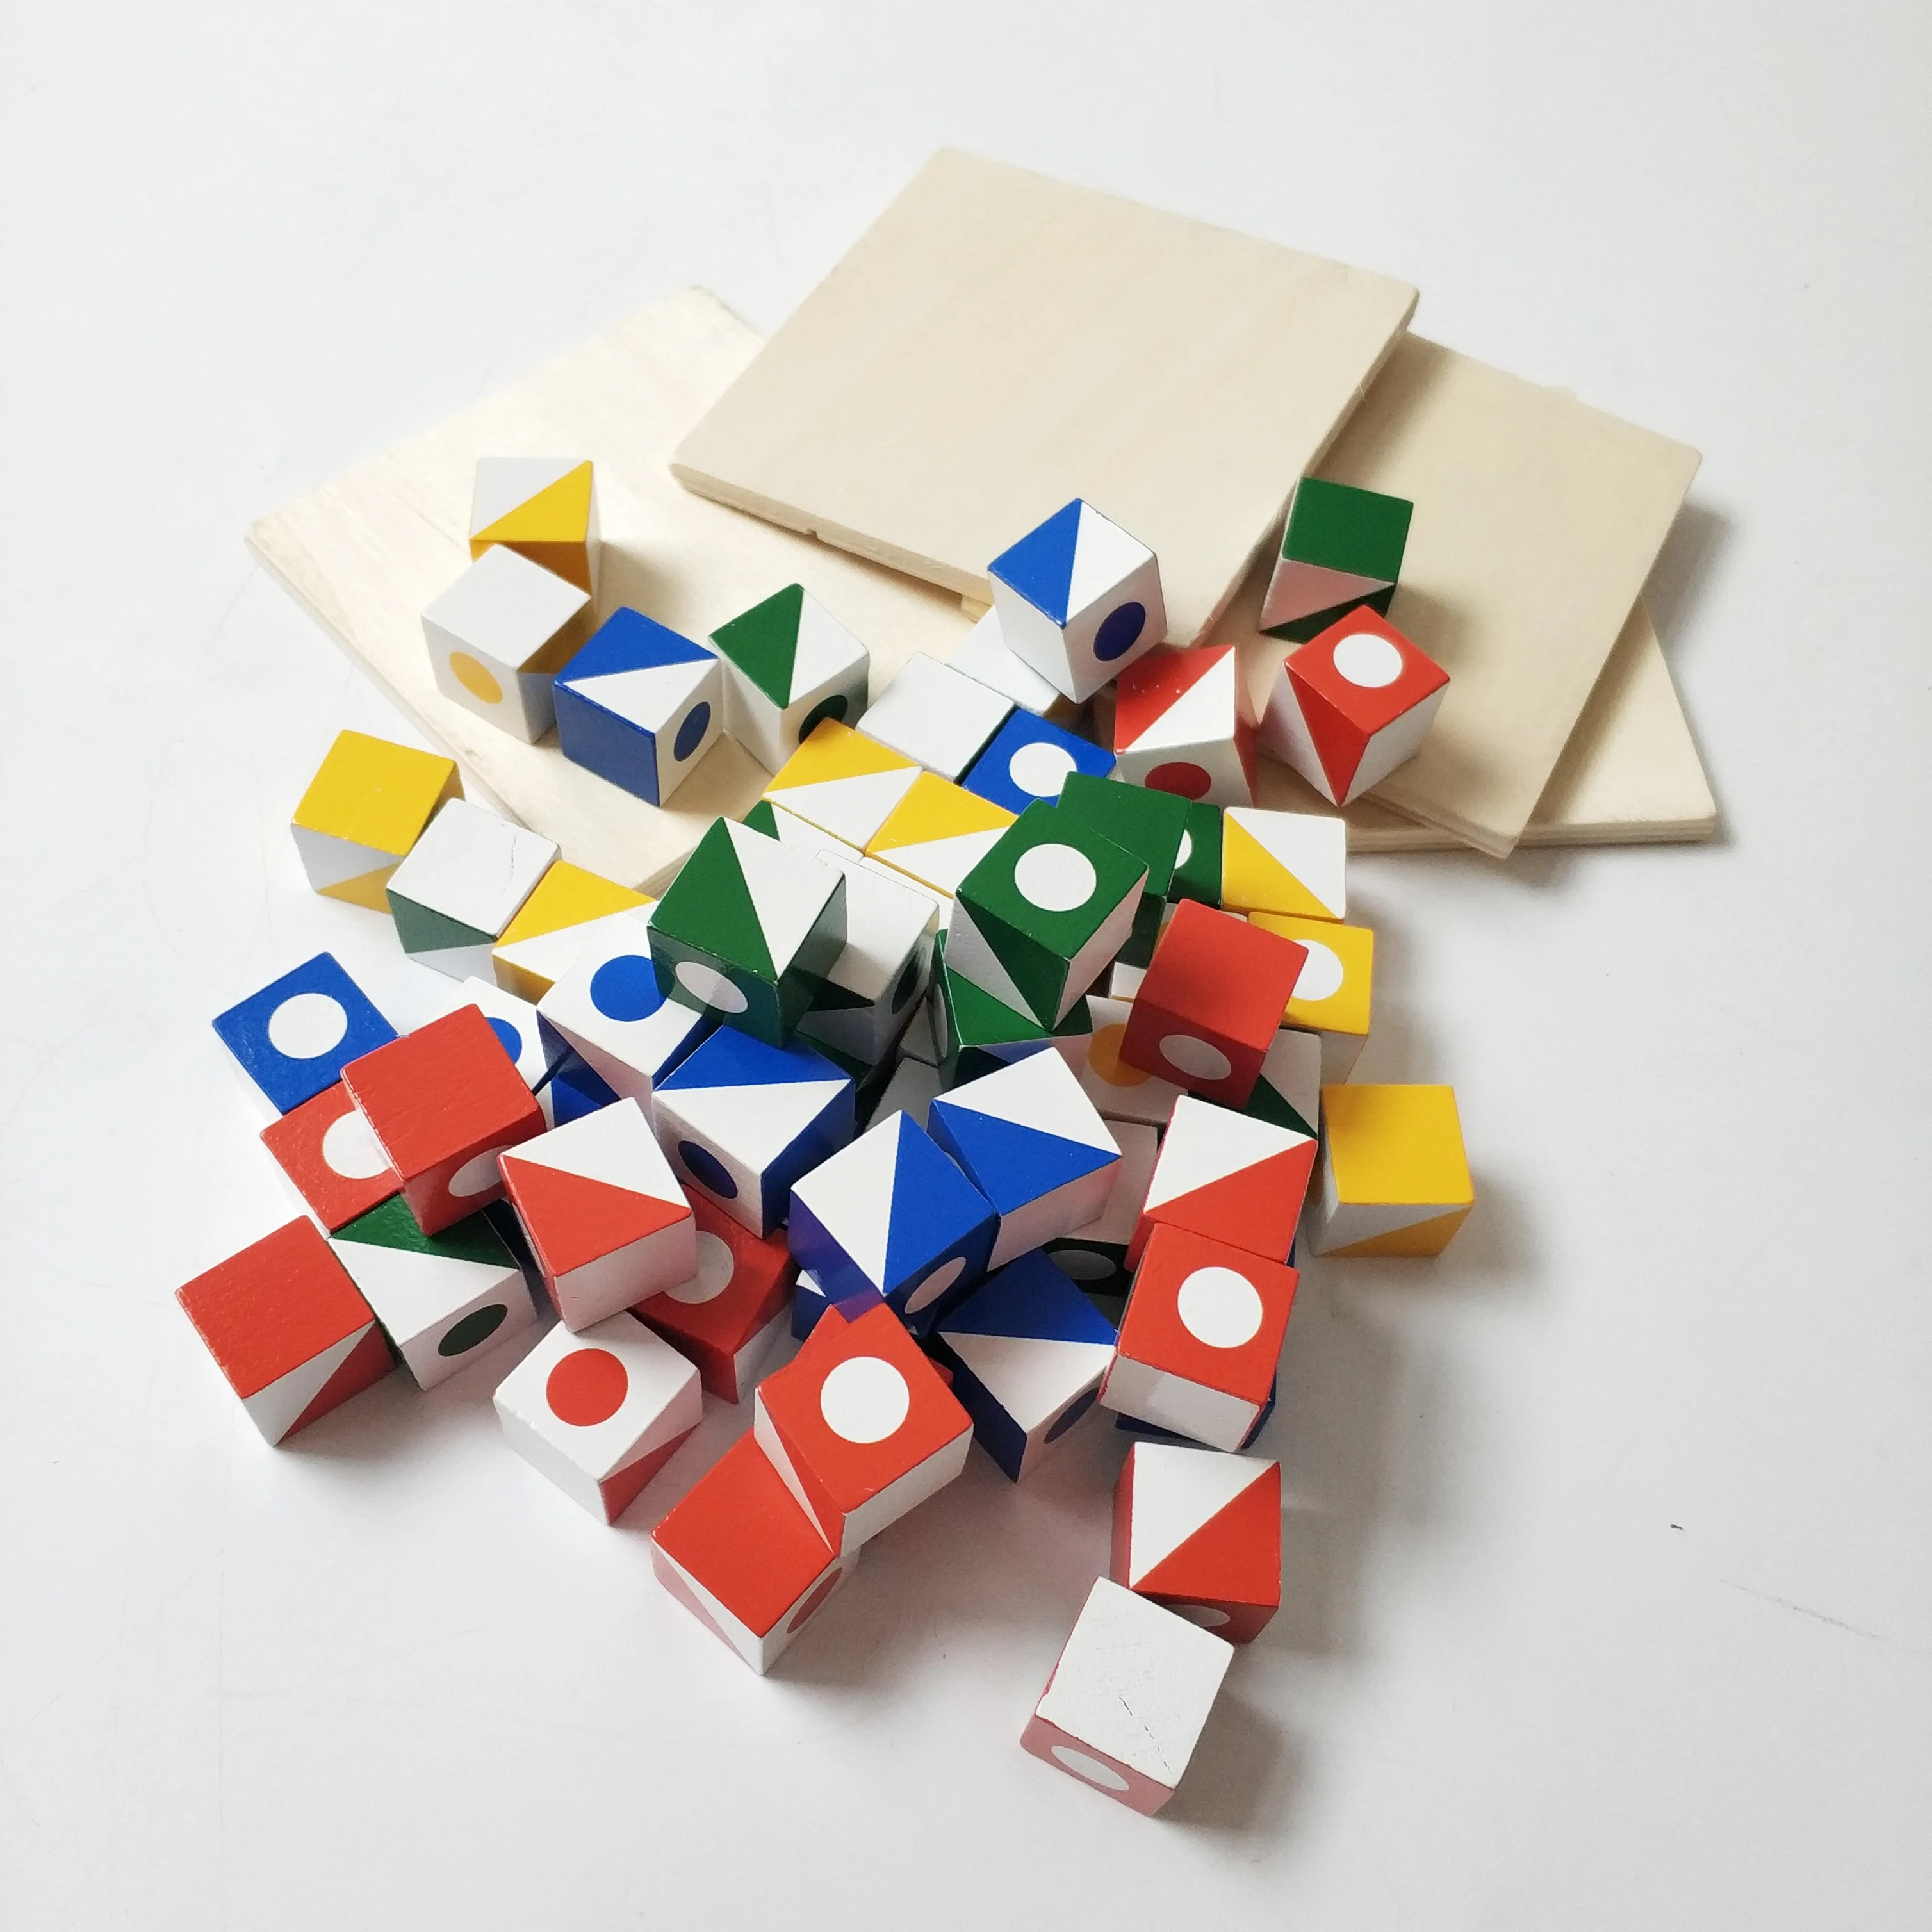 Игра для дошкольников, Семейная Игра, деревянные Обучающие игрушки, строительные блоки Brainstorm, строительные кубики Q-bitz